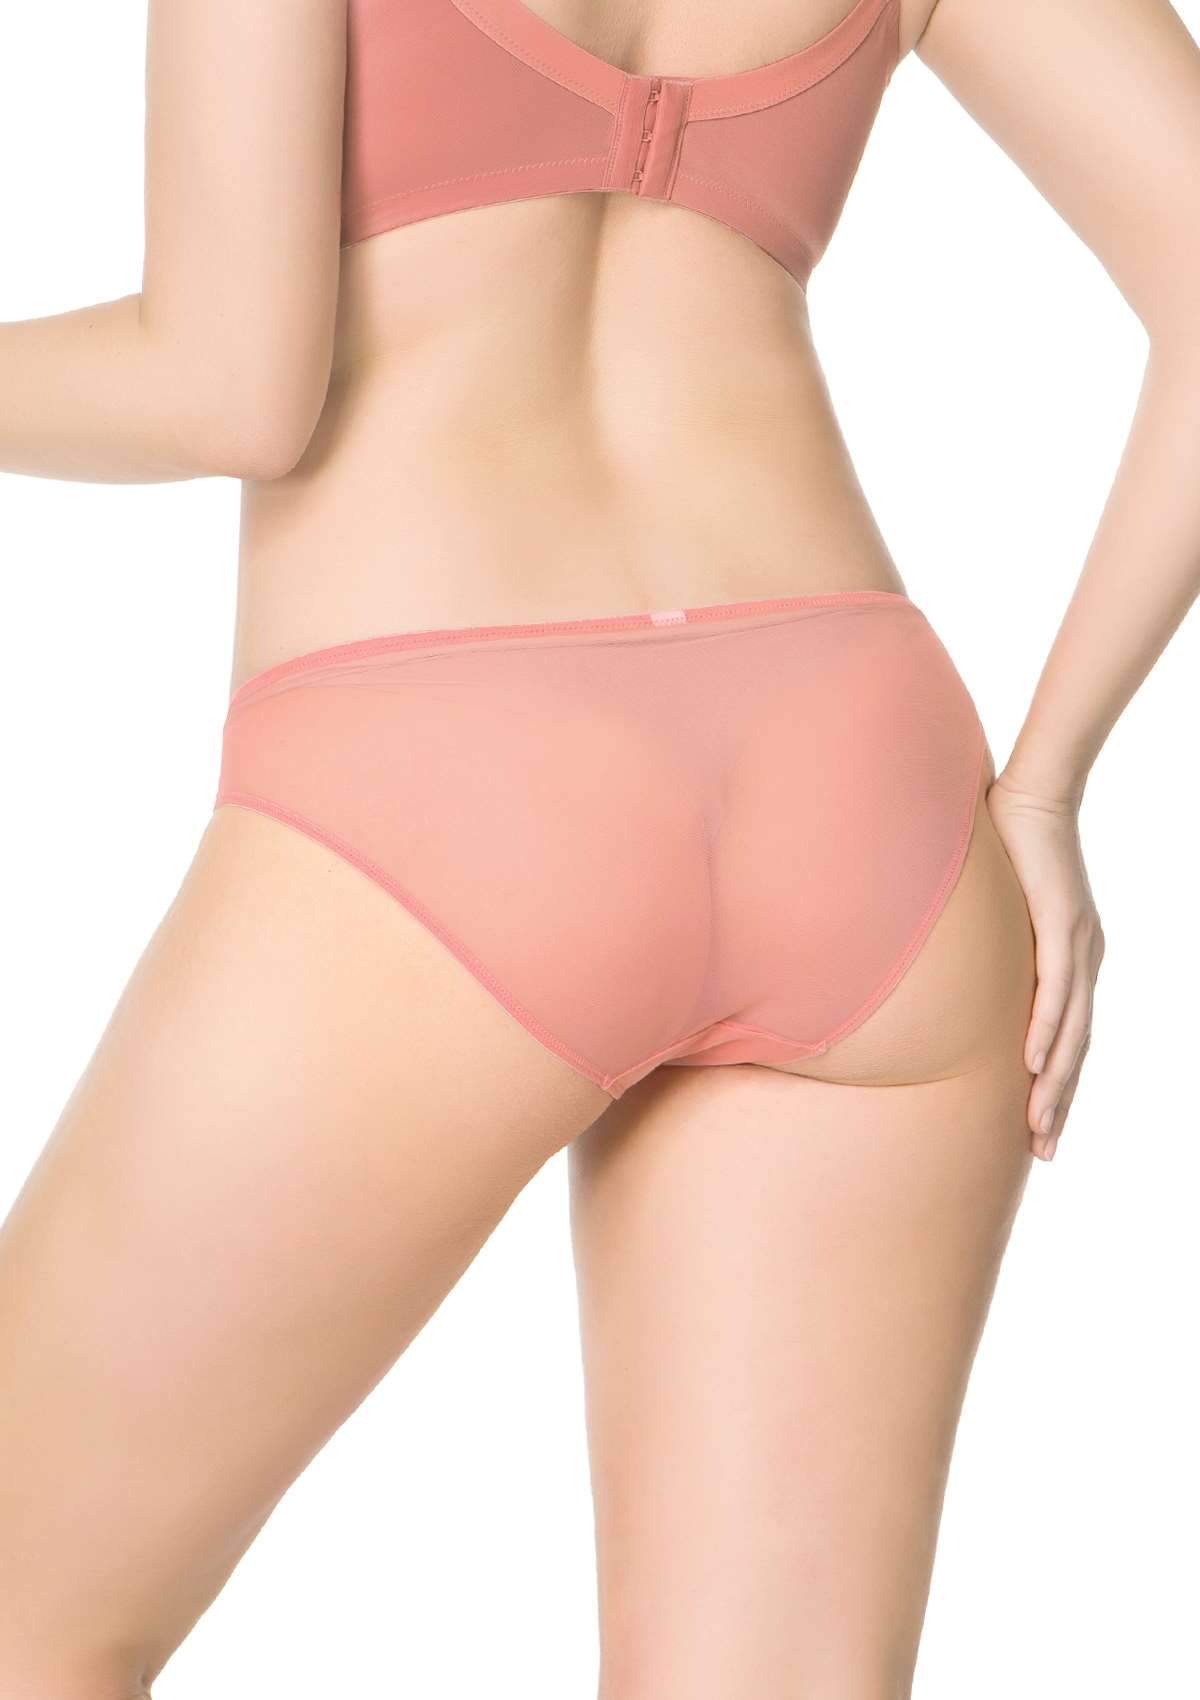 HSIA Plaid Lace Bikini Panties 3 Pack - XL / Black+Yellow+Pink